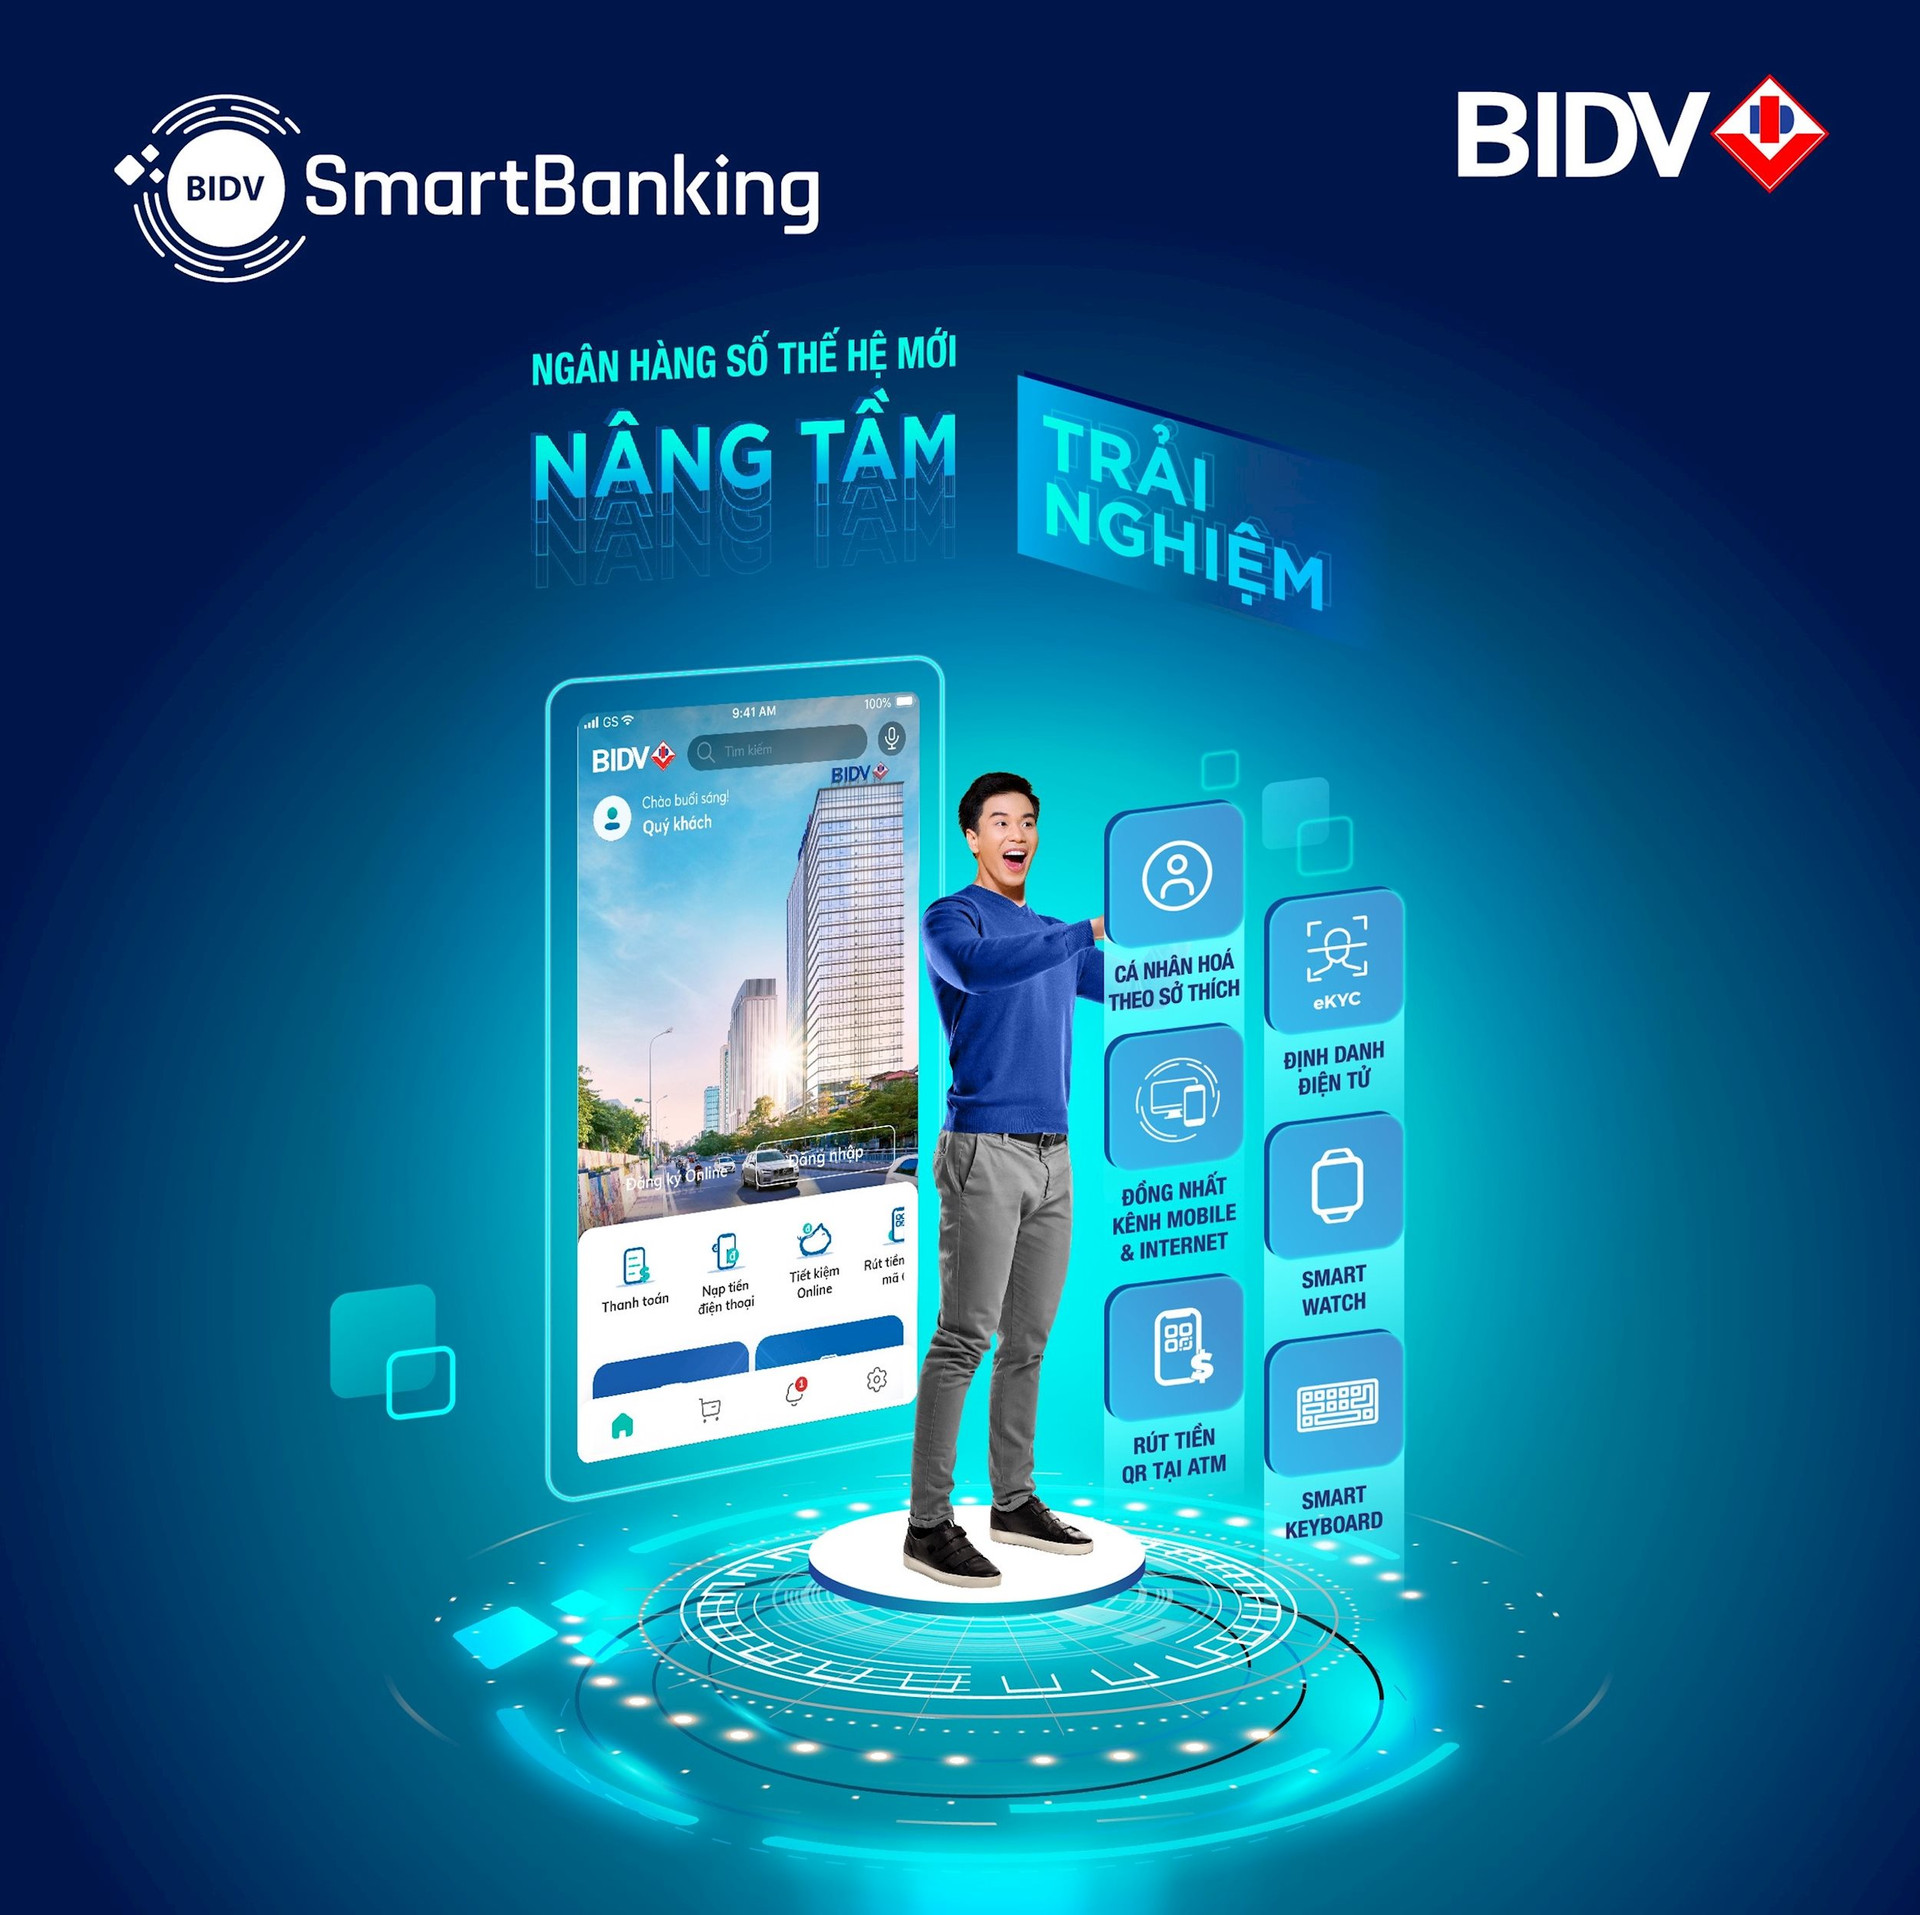 SmartBanking BIDV là ứng dụng ngân hàng số được phát hành bởi ngân hàng BIDV